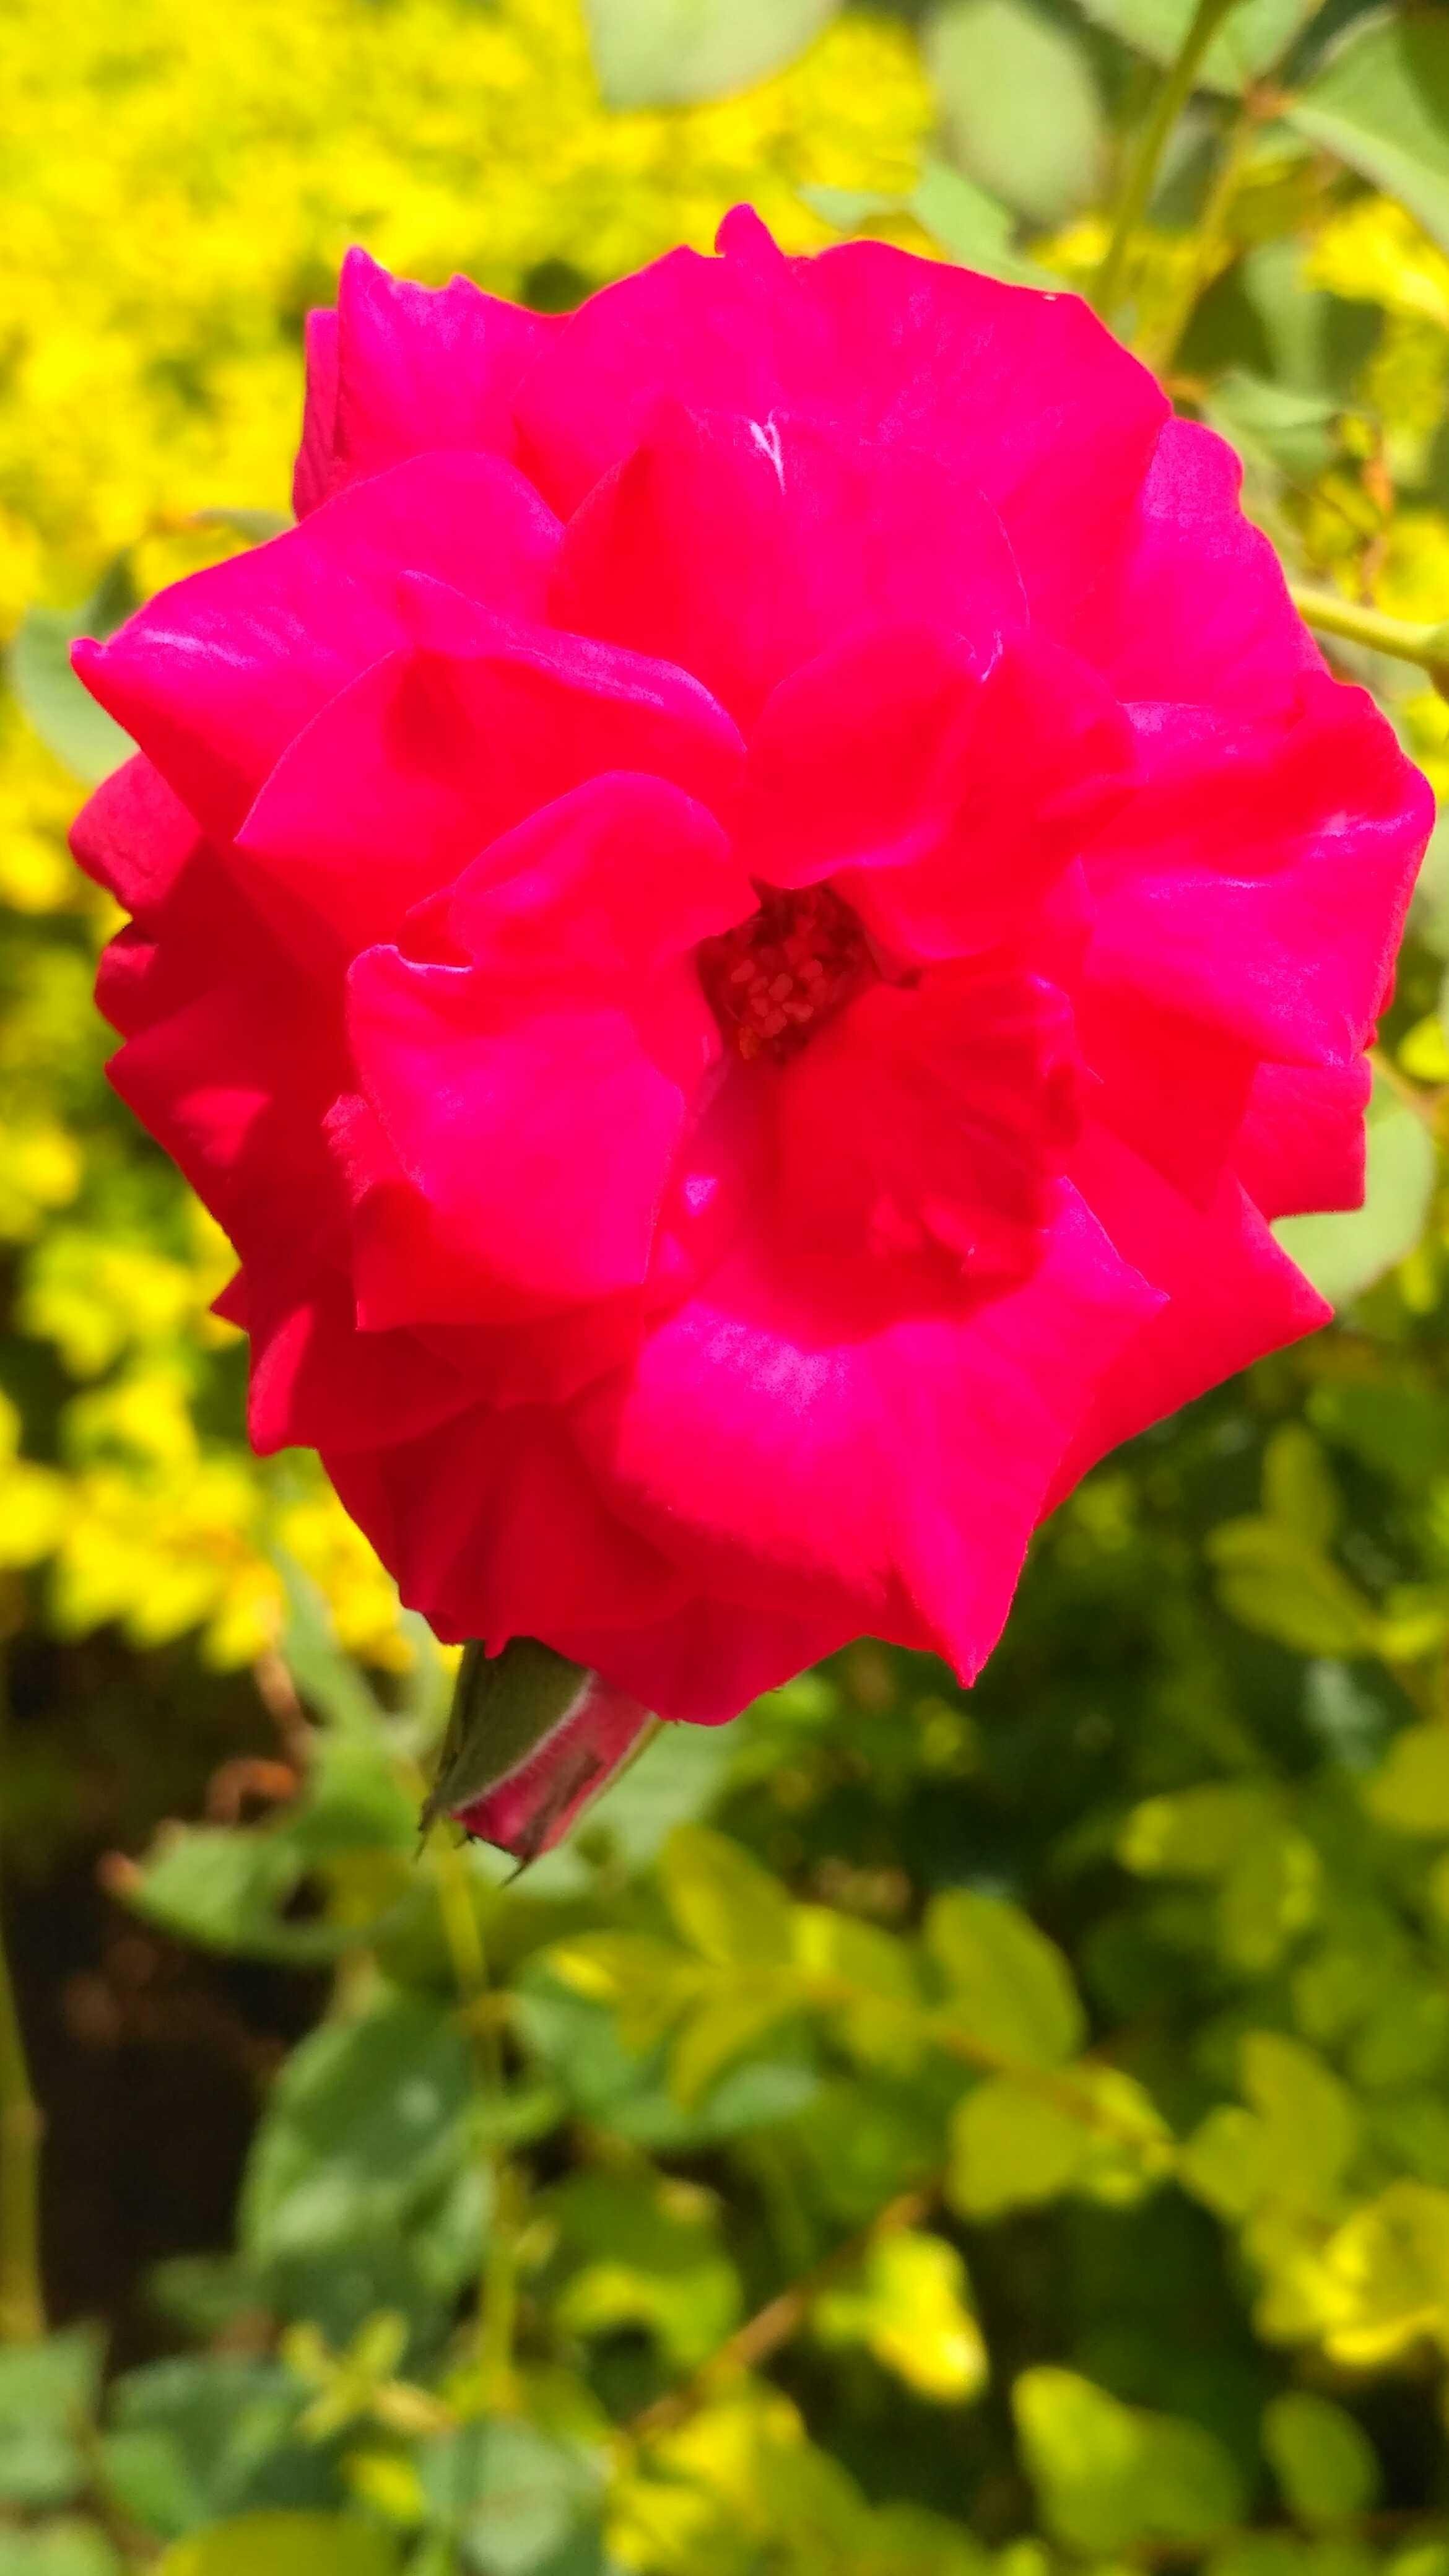  Mawar  merah   Steemit